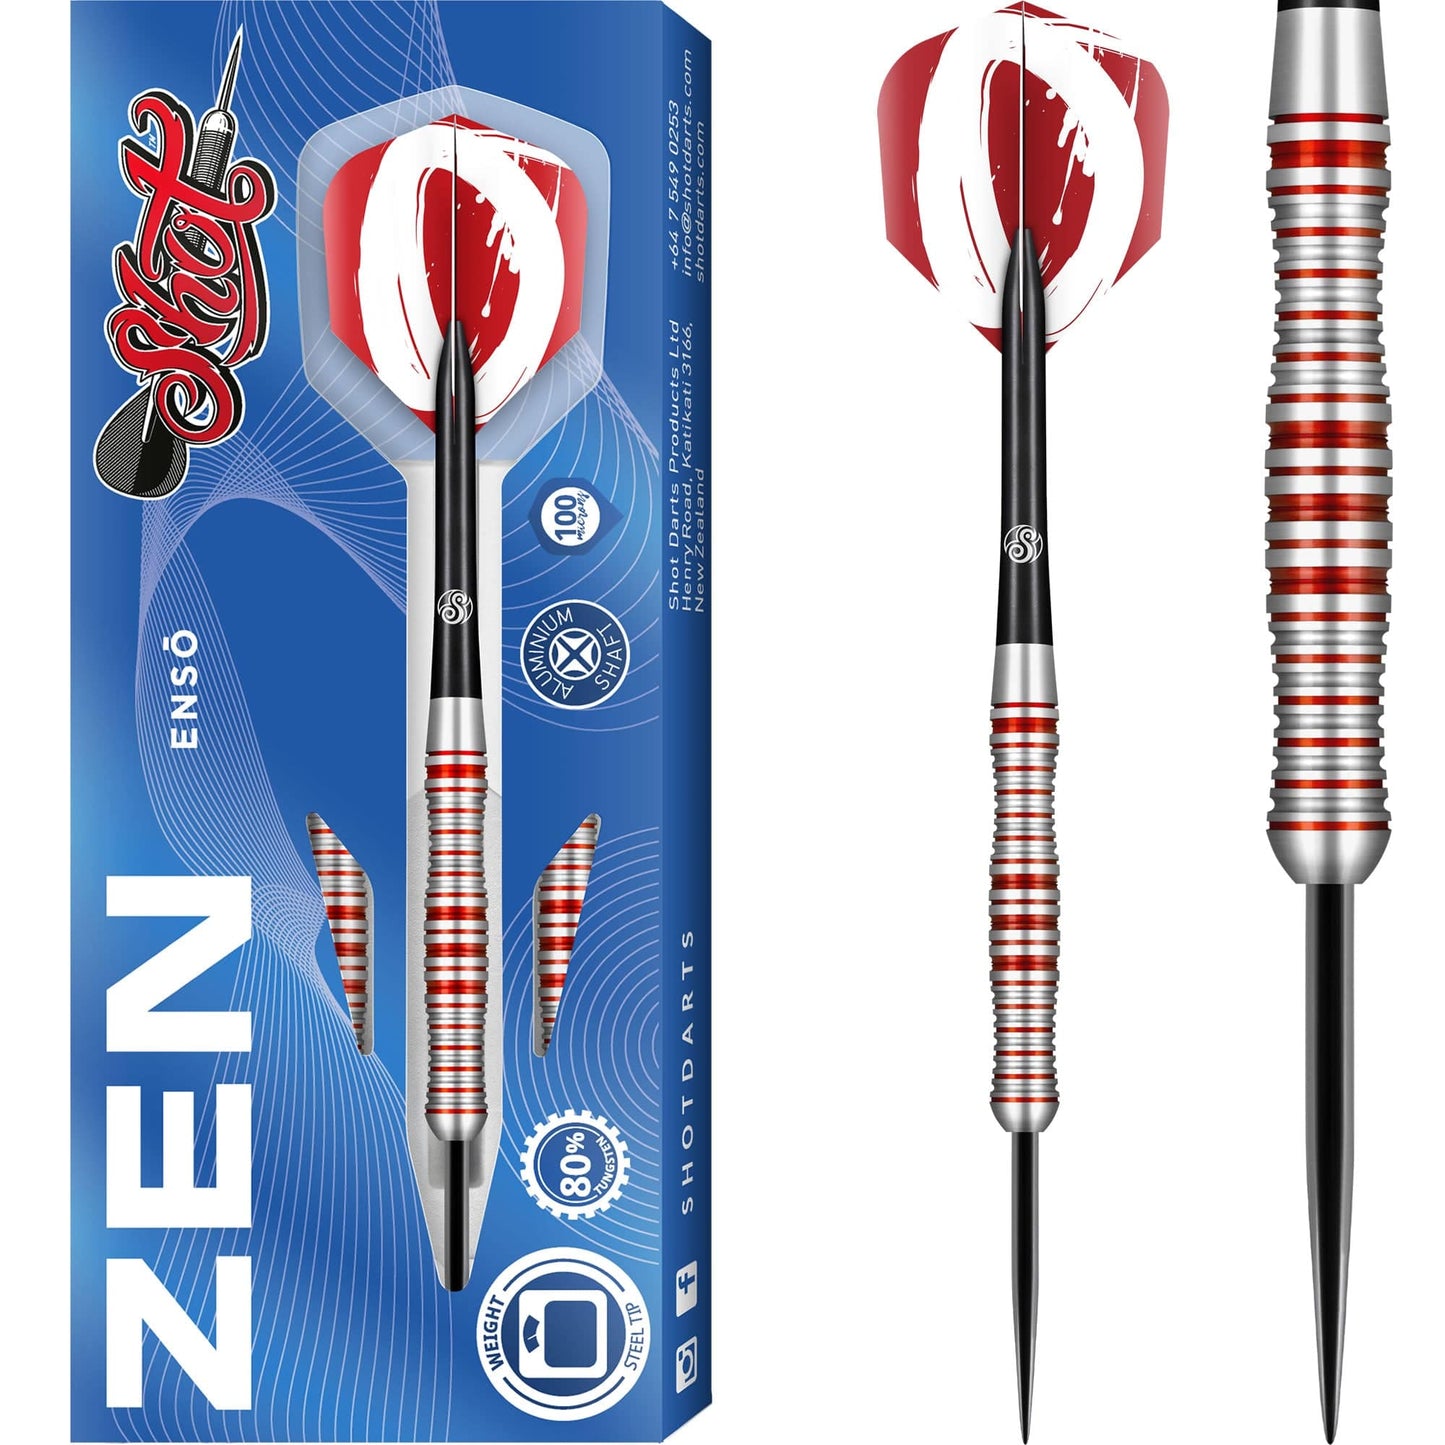 Shot Zen Series Darts - Steel Tip Tungsten - Enso 23g